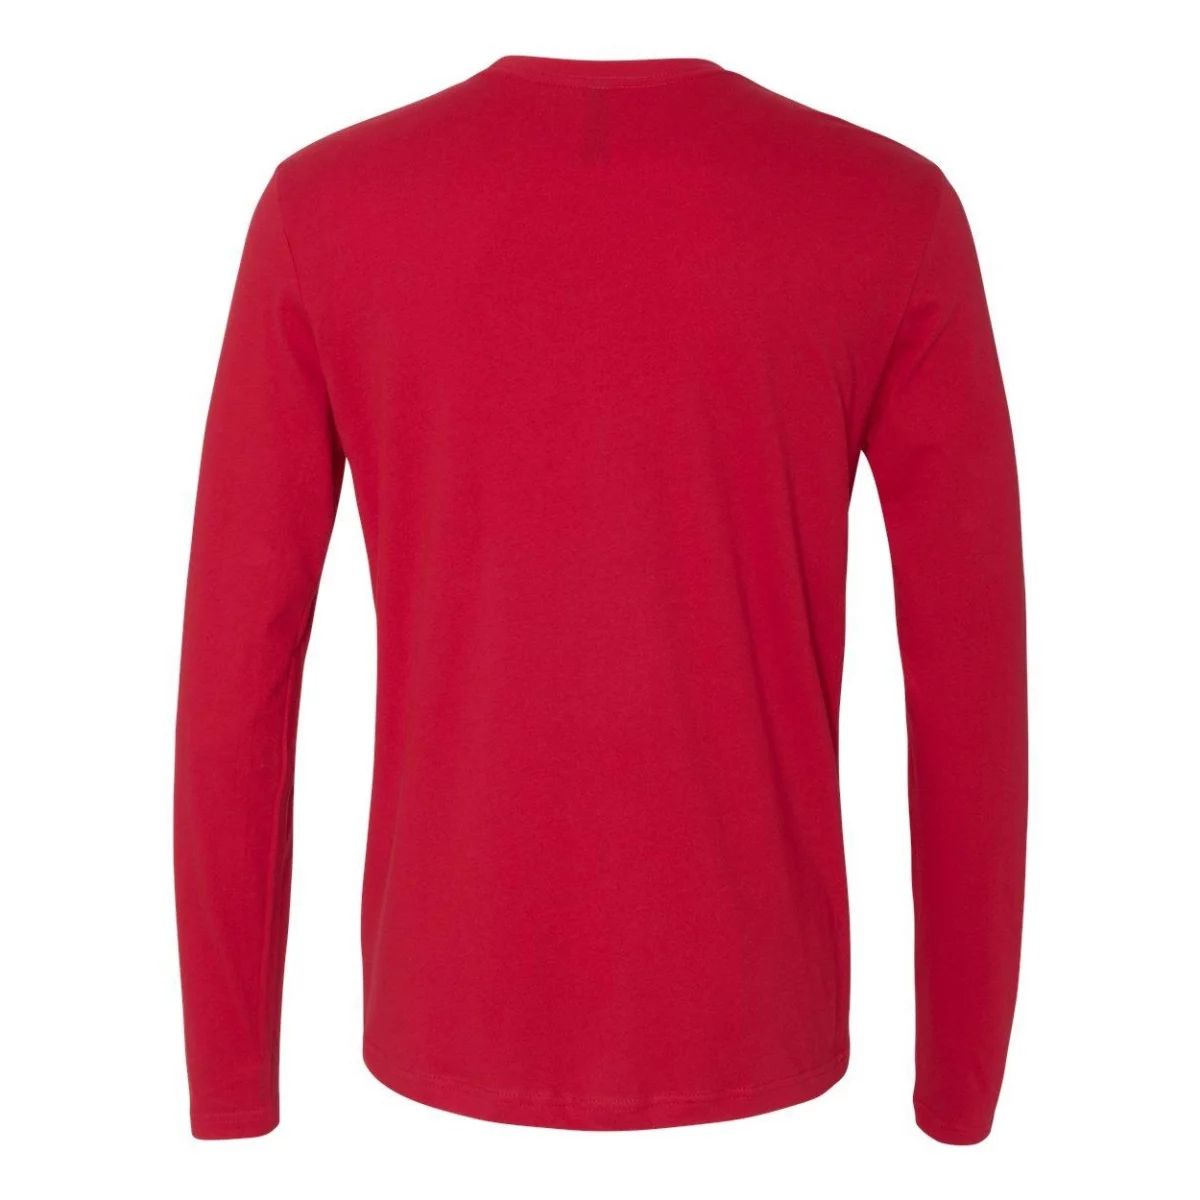 Хлопковая футболка-унисекс с длинными рукавами, Красная Next Level, красный